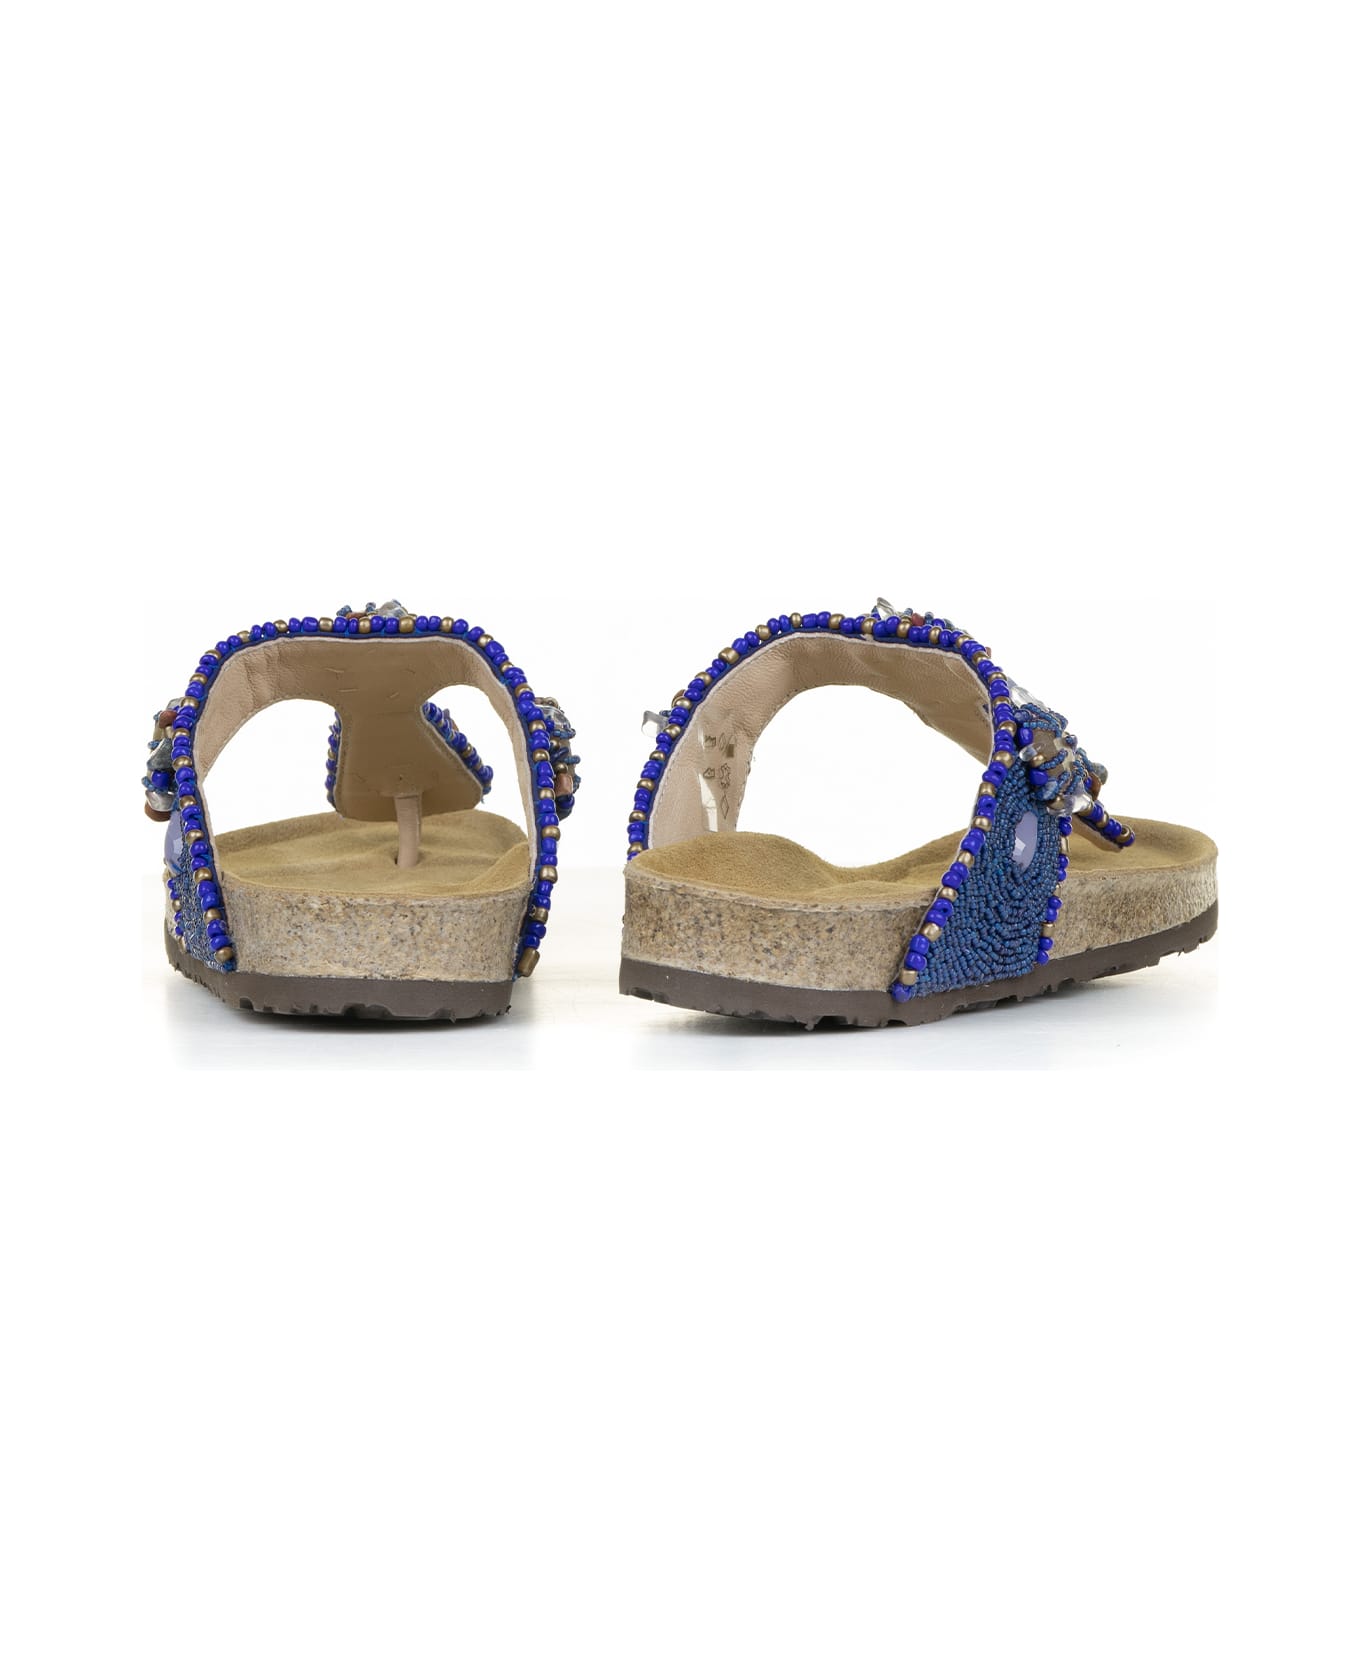 Malìparmi Flip-flops With Jewelery Embroidery On Beads - BLU/BEIGE